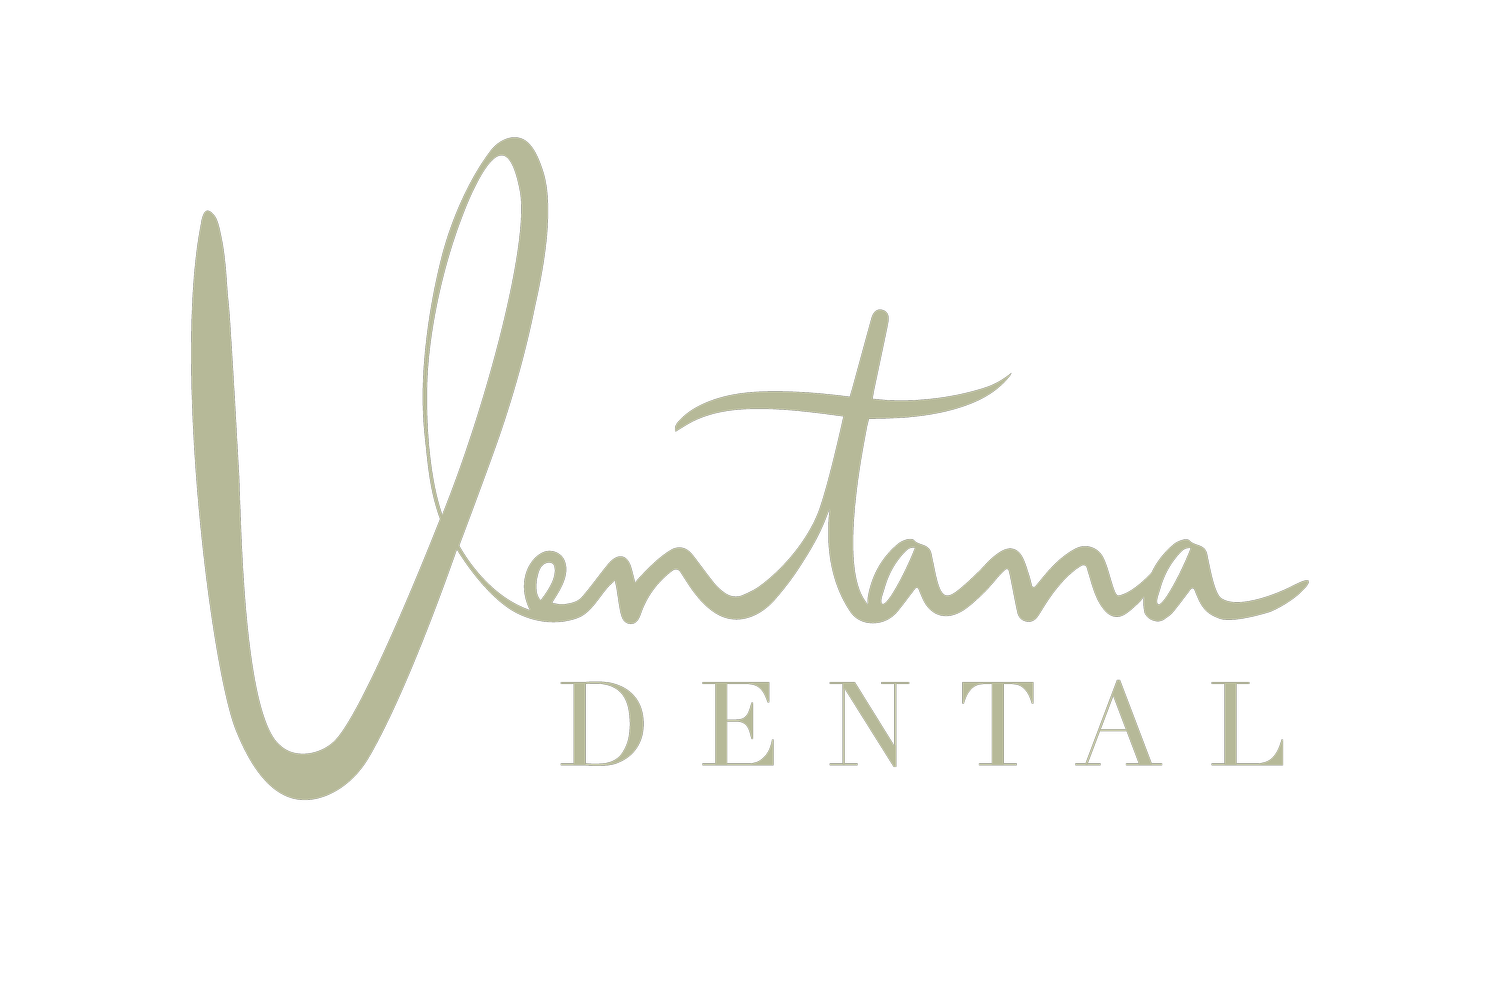 Ventana Dental